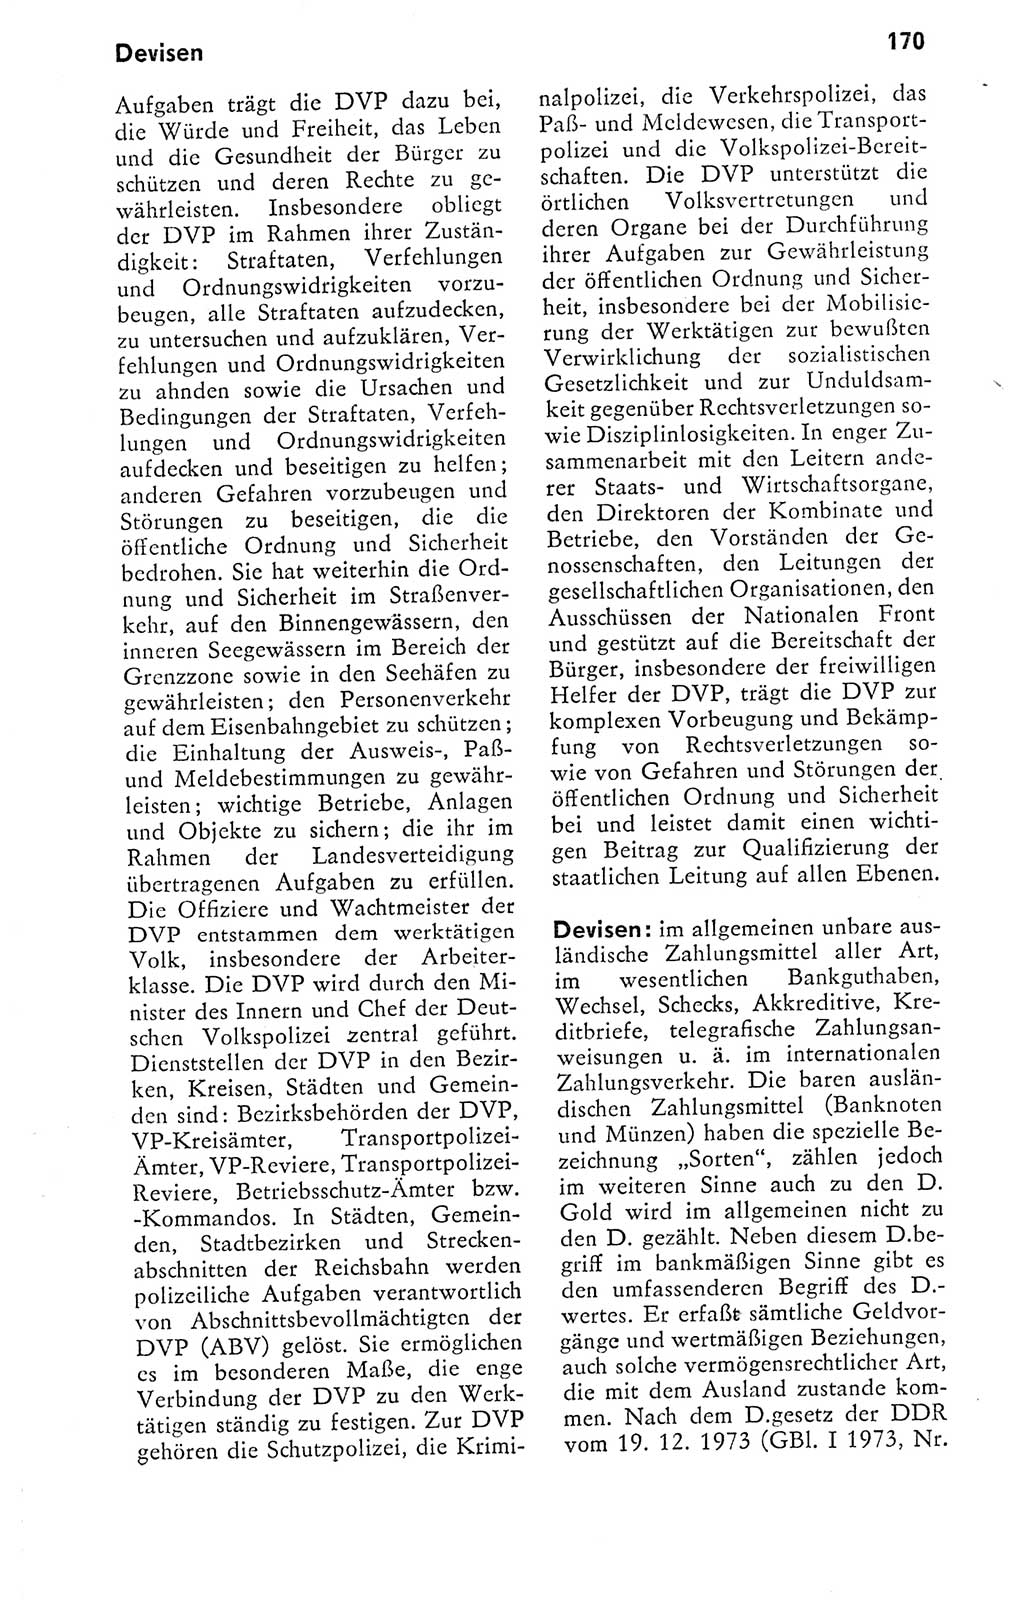 Kleines politisches Wörterbuch [Deutsche Demokratische Republik (DDR)] 1978, Seite 170 (Kl. pol. Wb. DDR 1978, S. 170)